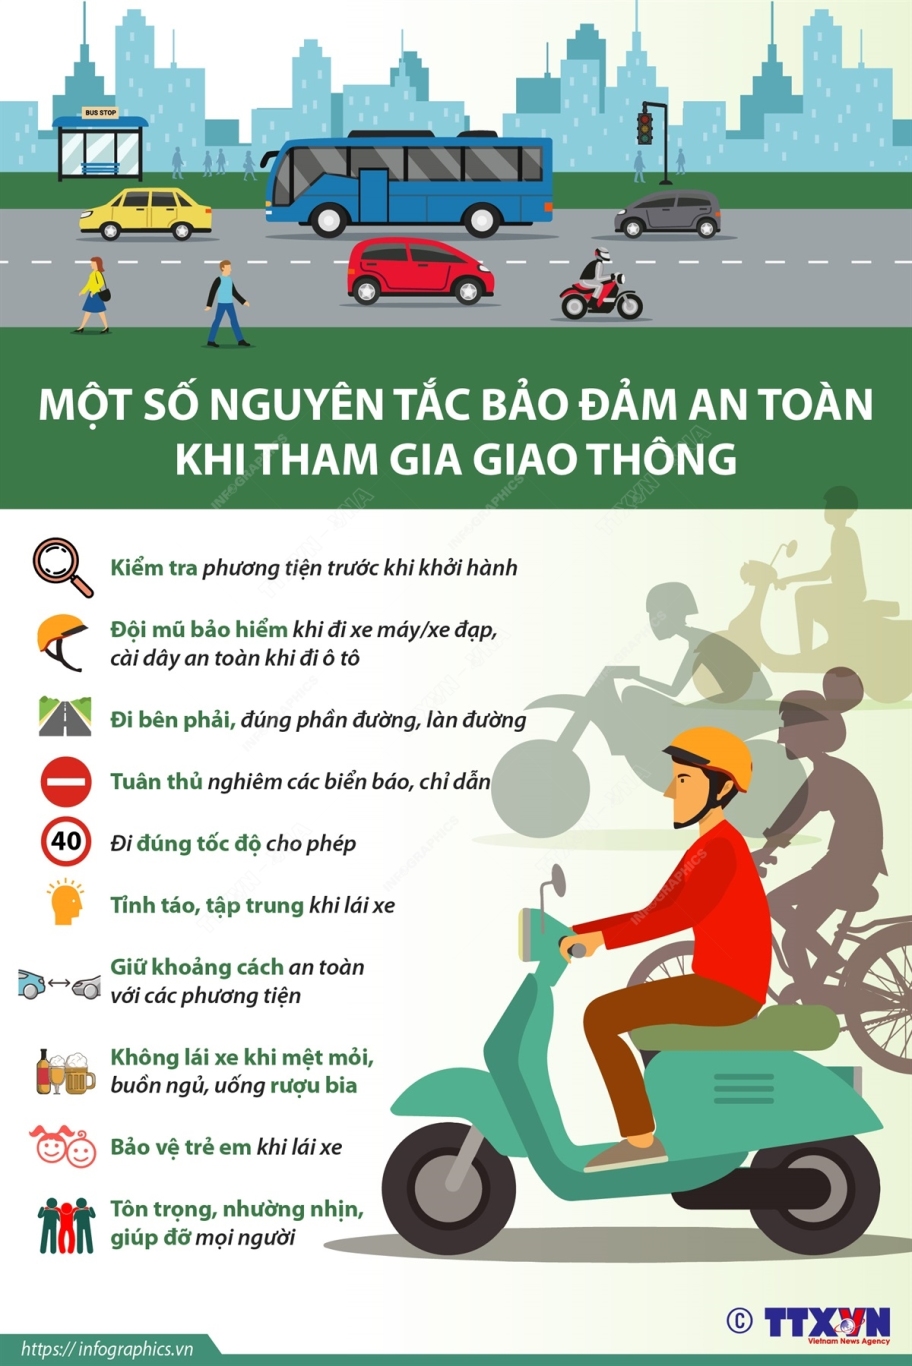 Một số nguyên tắc bảo đảm an toàn khi tham gia giao thông